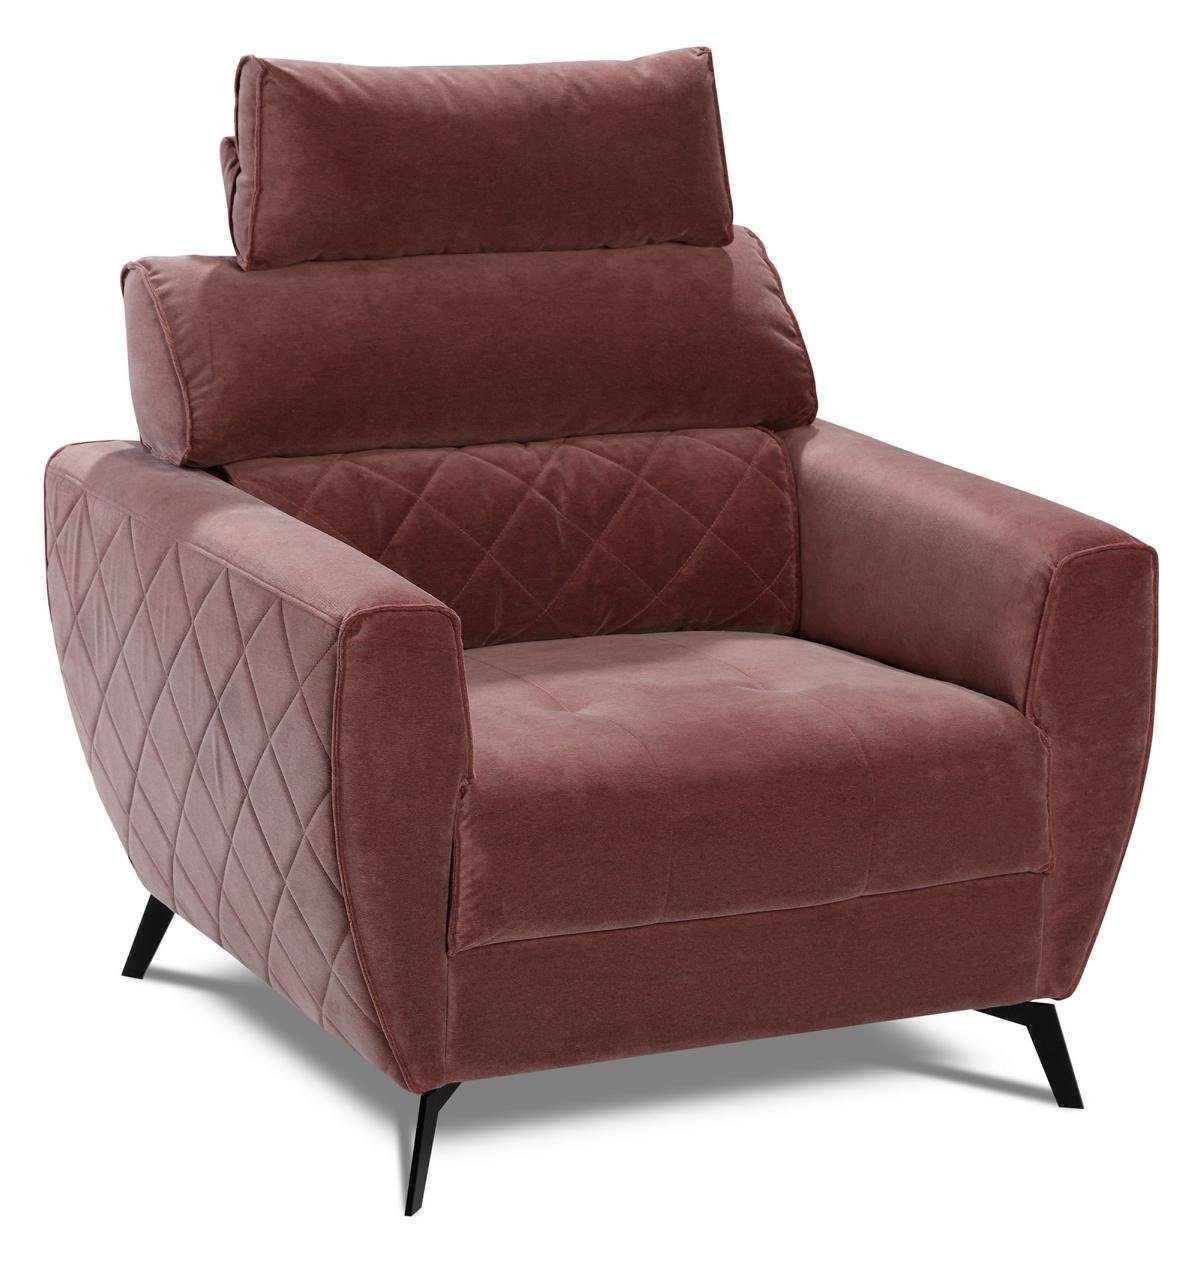 JVmoebel Wohnzimmer-Set, Polster Rot Design Couch 2+1+1 Sitz Sofa Leder Kunstleder Garnituren